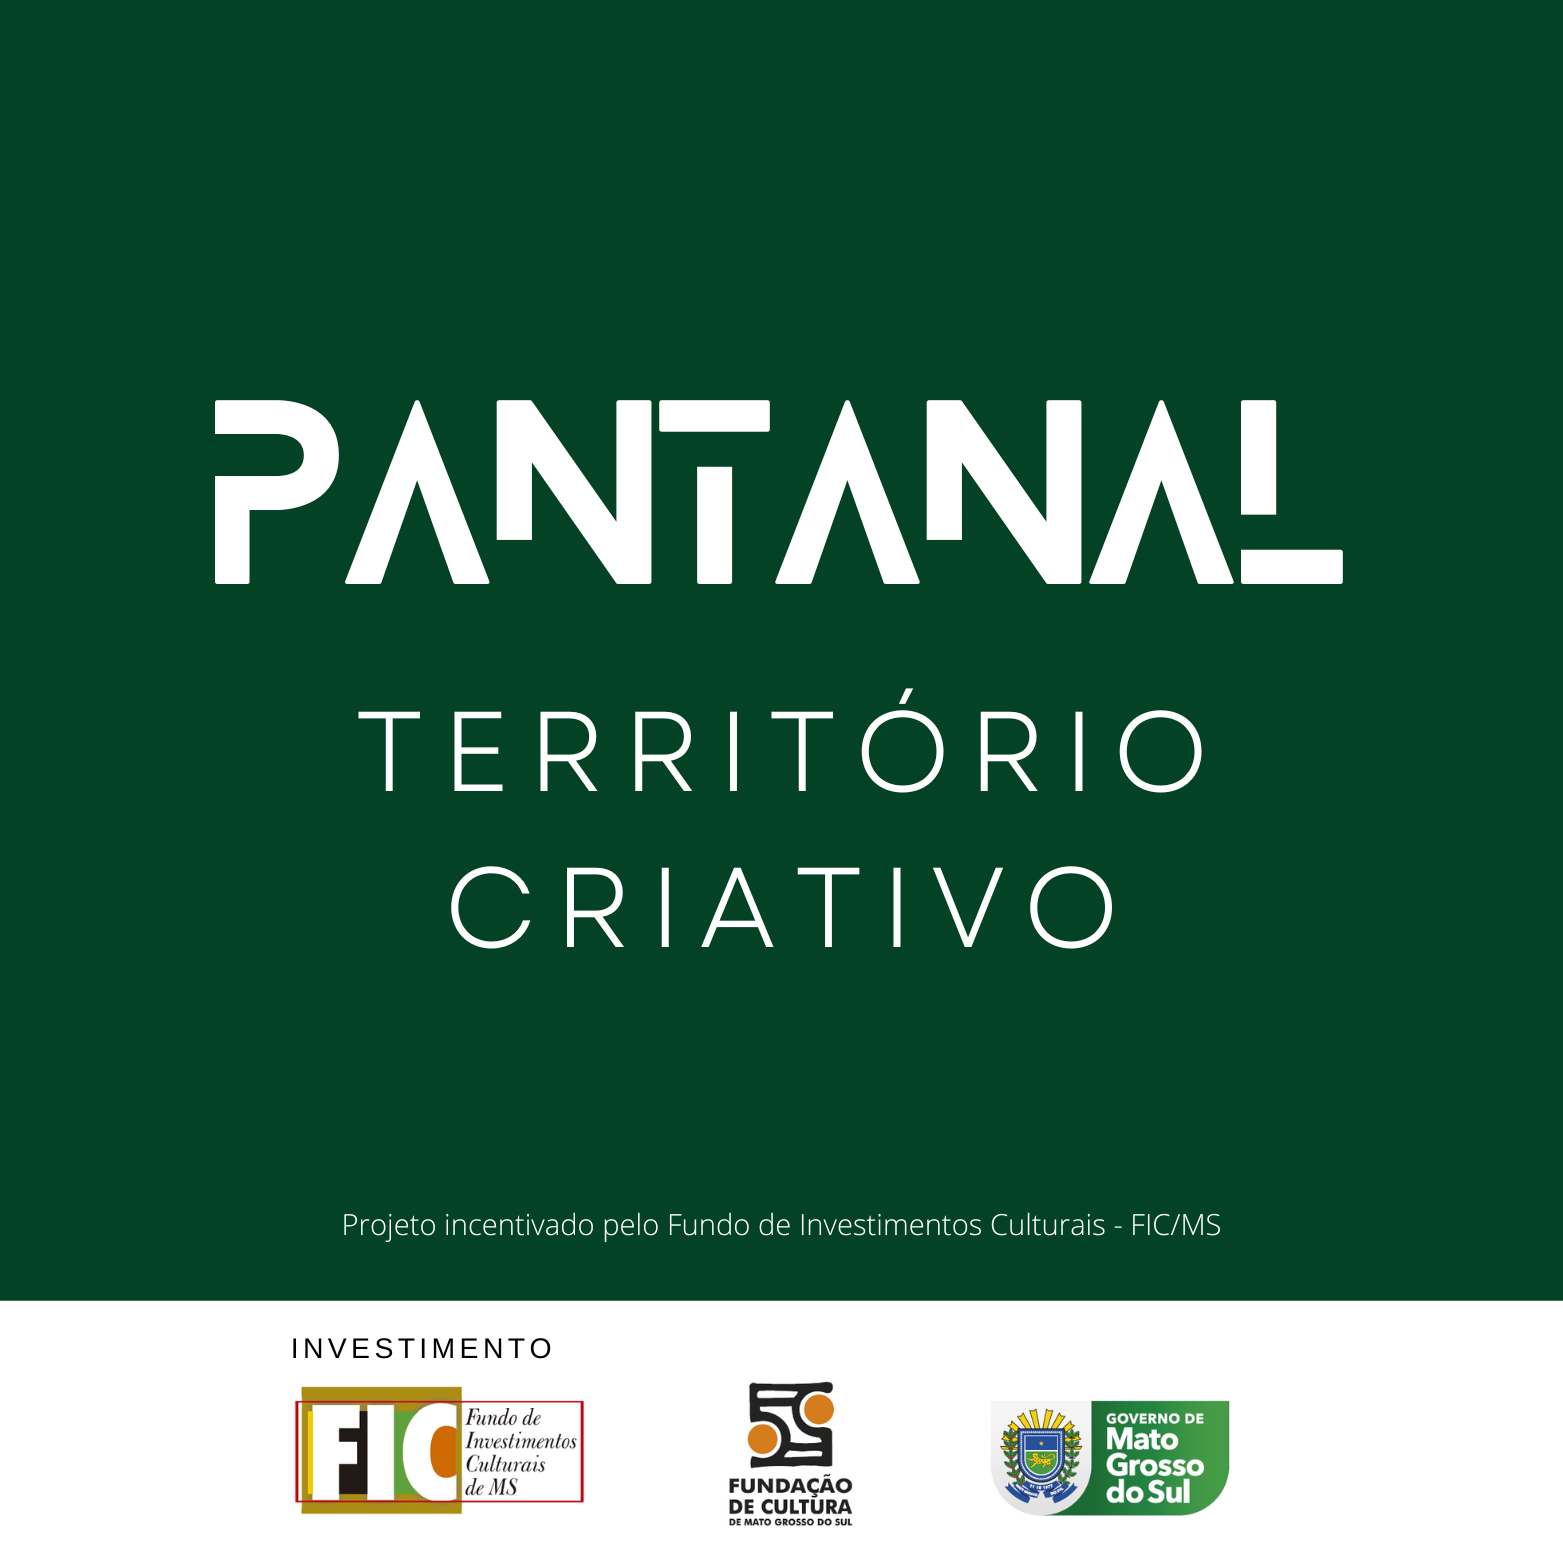 Pantanal (1)